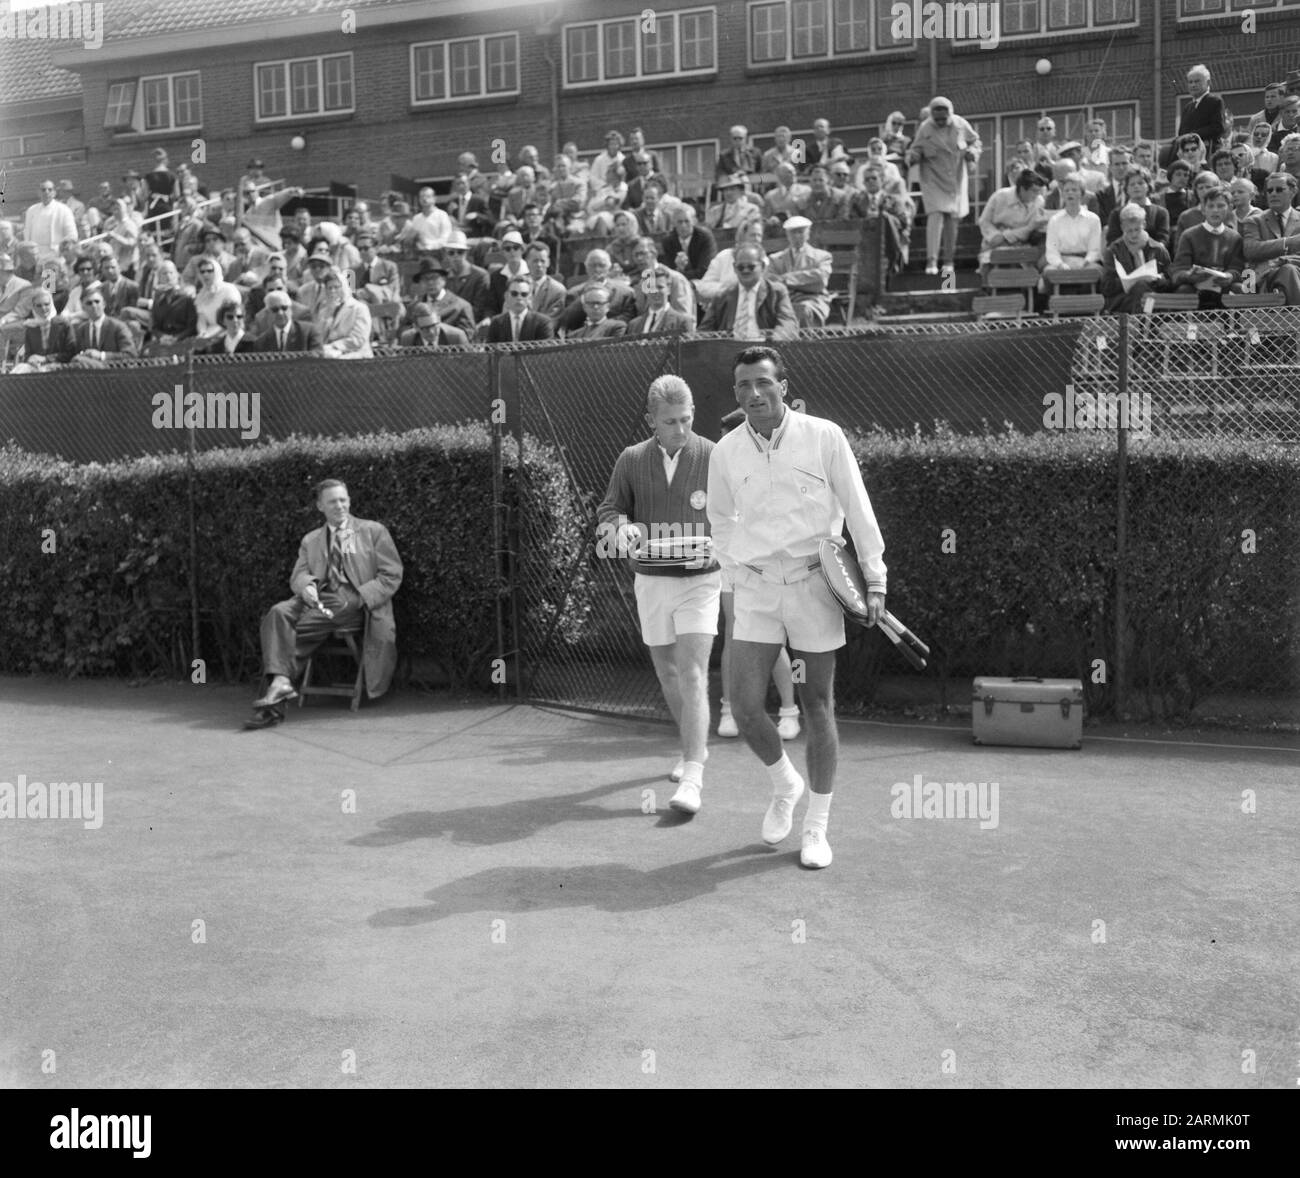 Tennis Noordwijk. Profi-Meisterschaft. Robert Haillet (rechts) und Lew Hoad (links). Datum: 4. August 1961 Ort: Noordwijk Schlagwörter: Tennisname: Haillet, Robert, Hoad, Lew Stockfoto